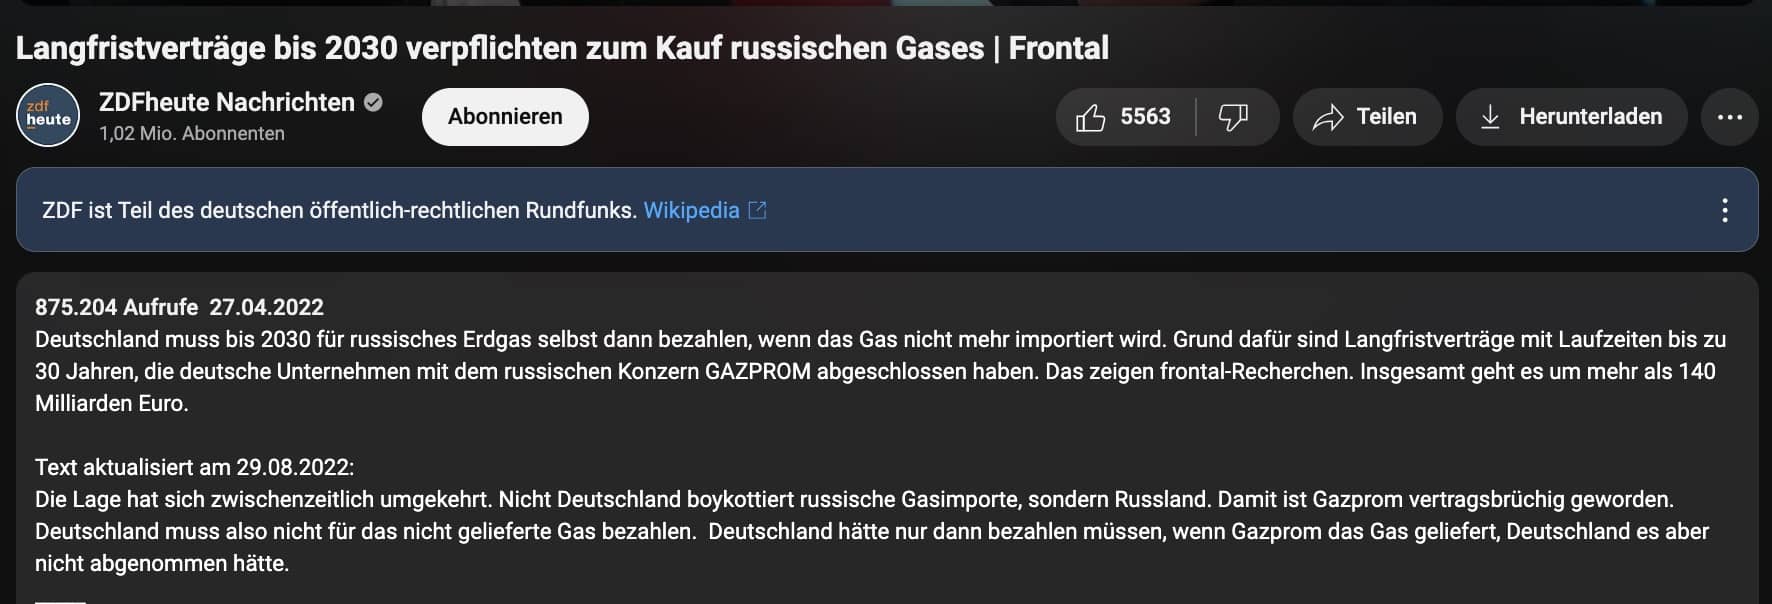 Unter dem ZDF-Video steht der Hinweis: „Text aktualisiert am 29.08.2022: Die Lage hat sich zwischenzeitlich umgekehrt. Nicht Deutschland boykottiert russische Gasimporte, sondern Russland. Damit ist Gazprom vertragsbrüchig geworden. Deutschland muss also nicht für das nicht gelieferte Gas bezahlen. Deutschland hätte nur dann bezahlen müssen, wenn Gazprom das Gas geliefert, Deutschland es aber nicht abgenommen hätte.“